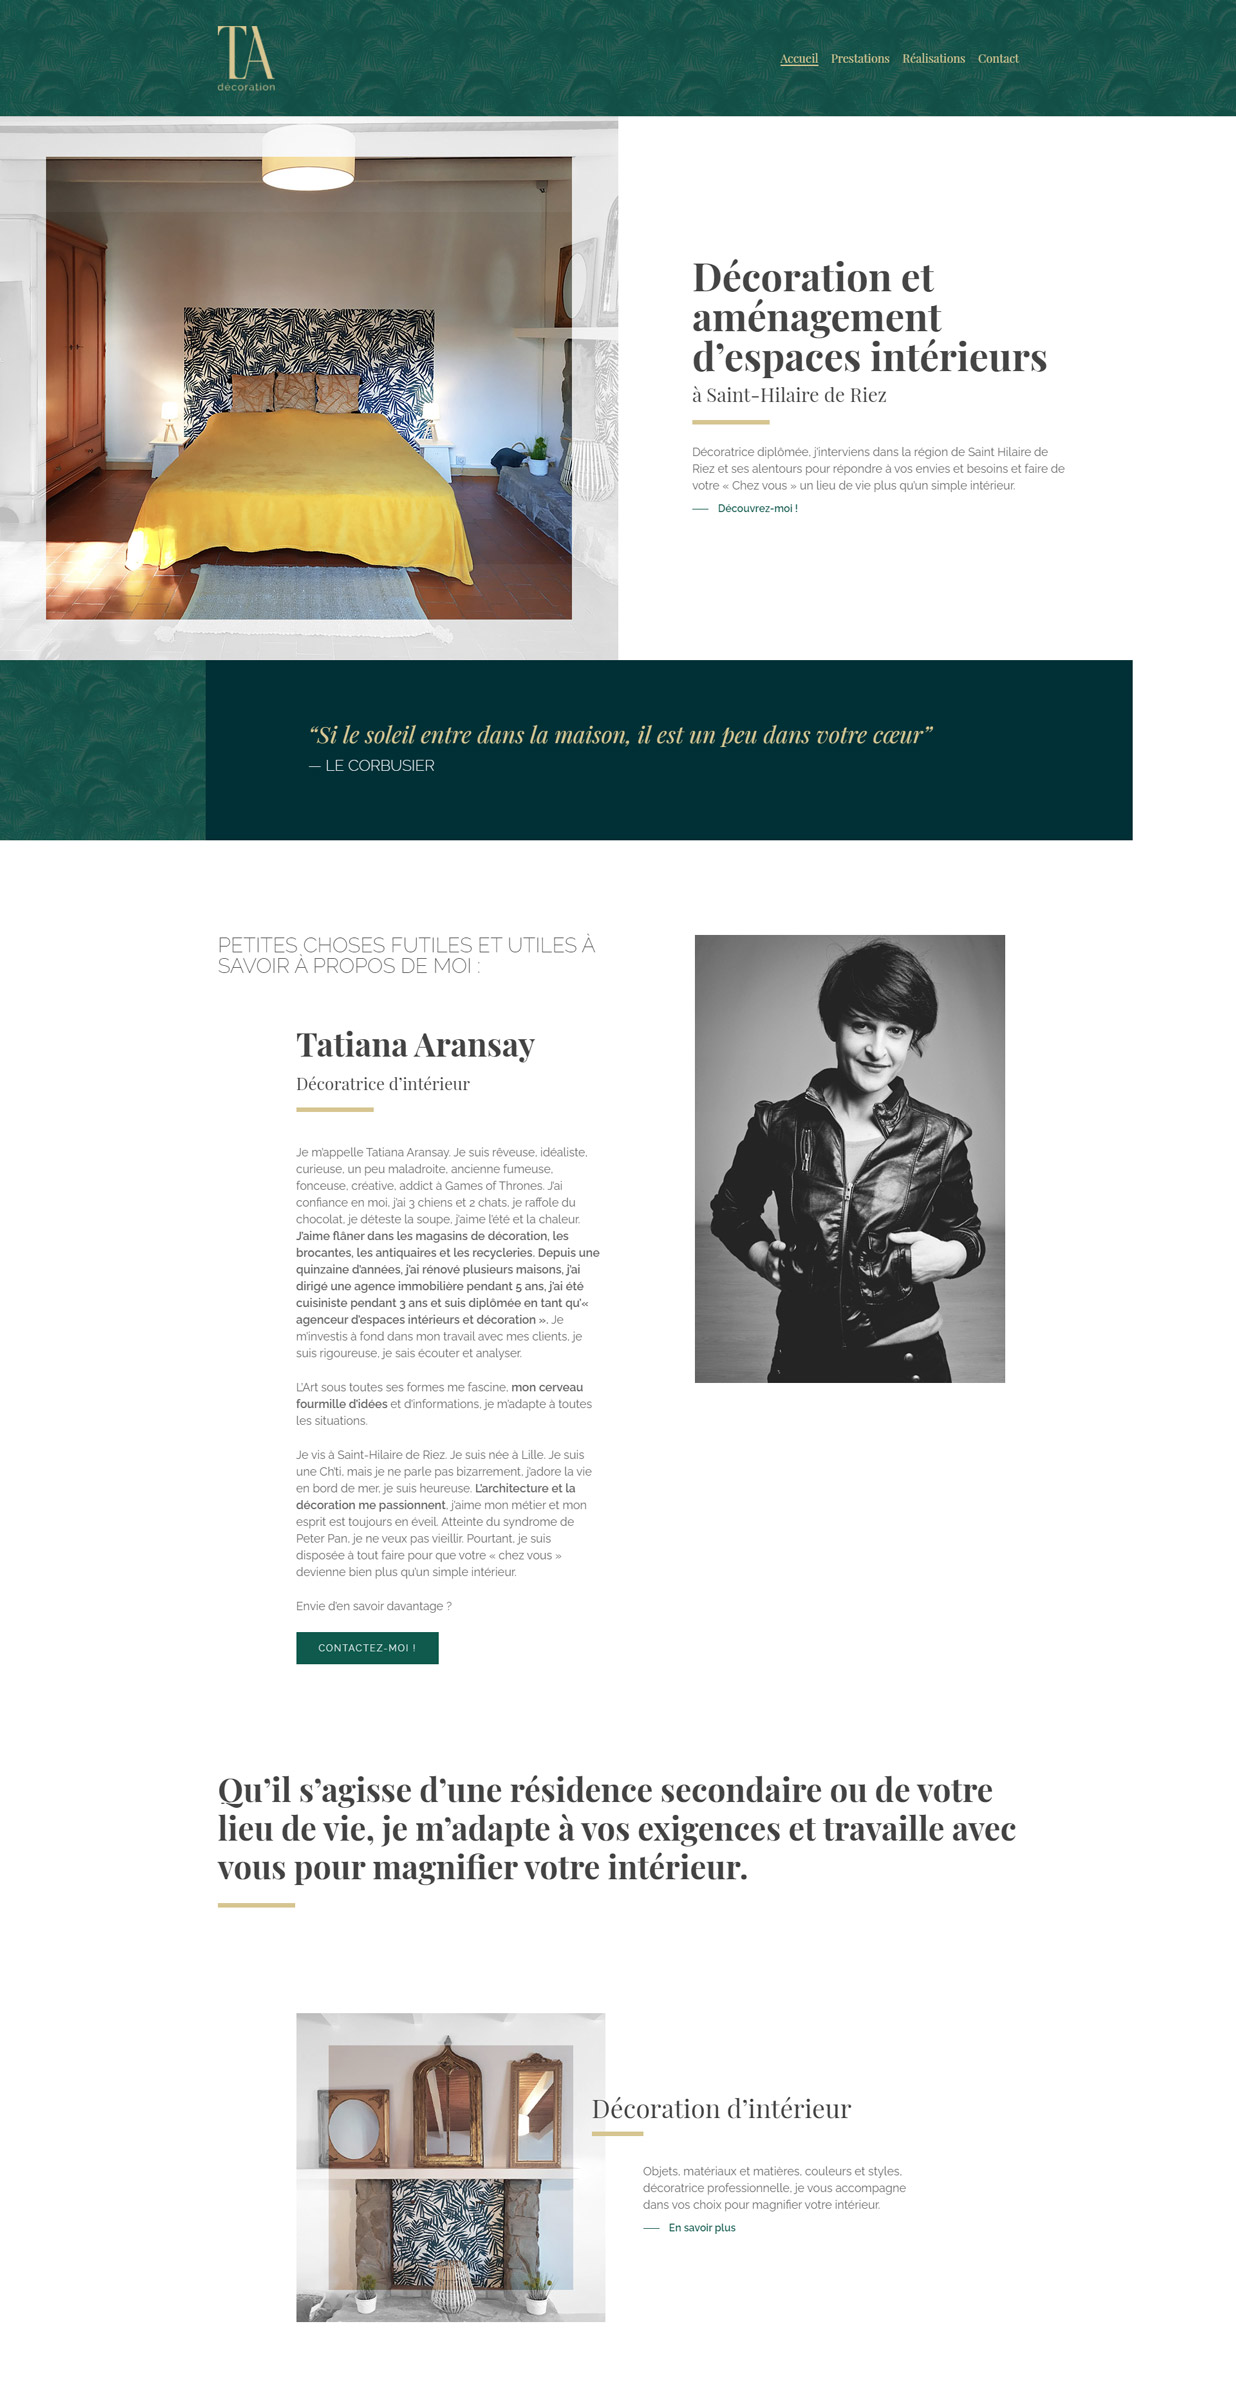 Design desktop page d'accueil - tadecoration.fr - partie 1